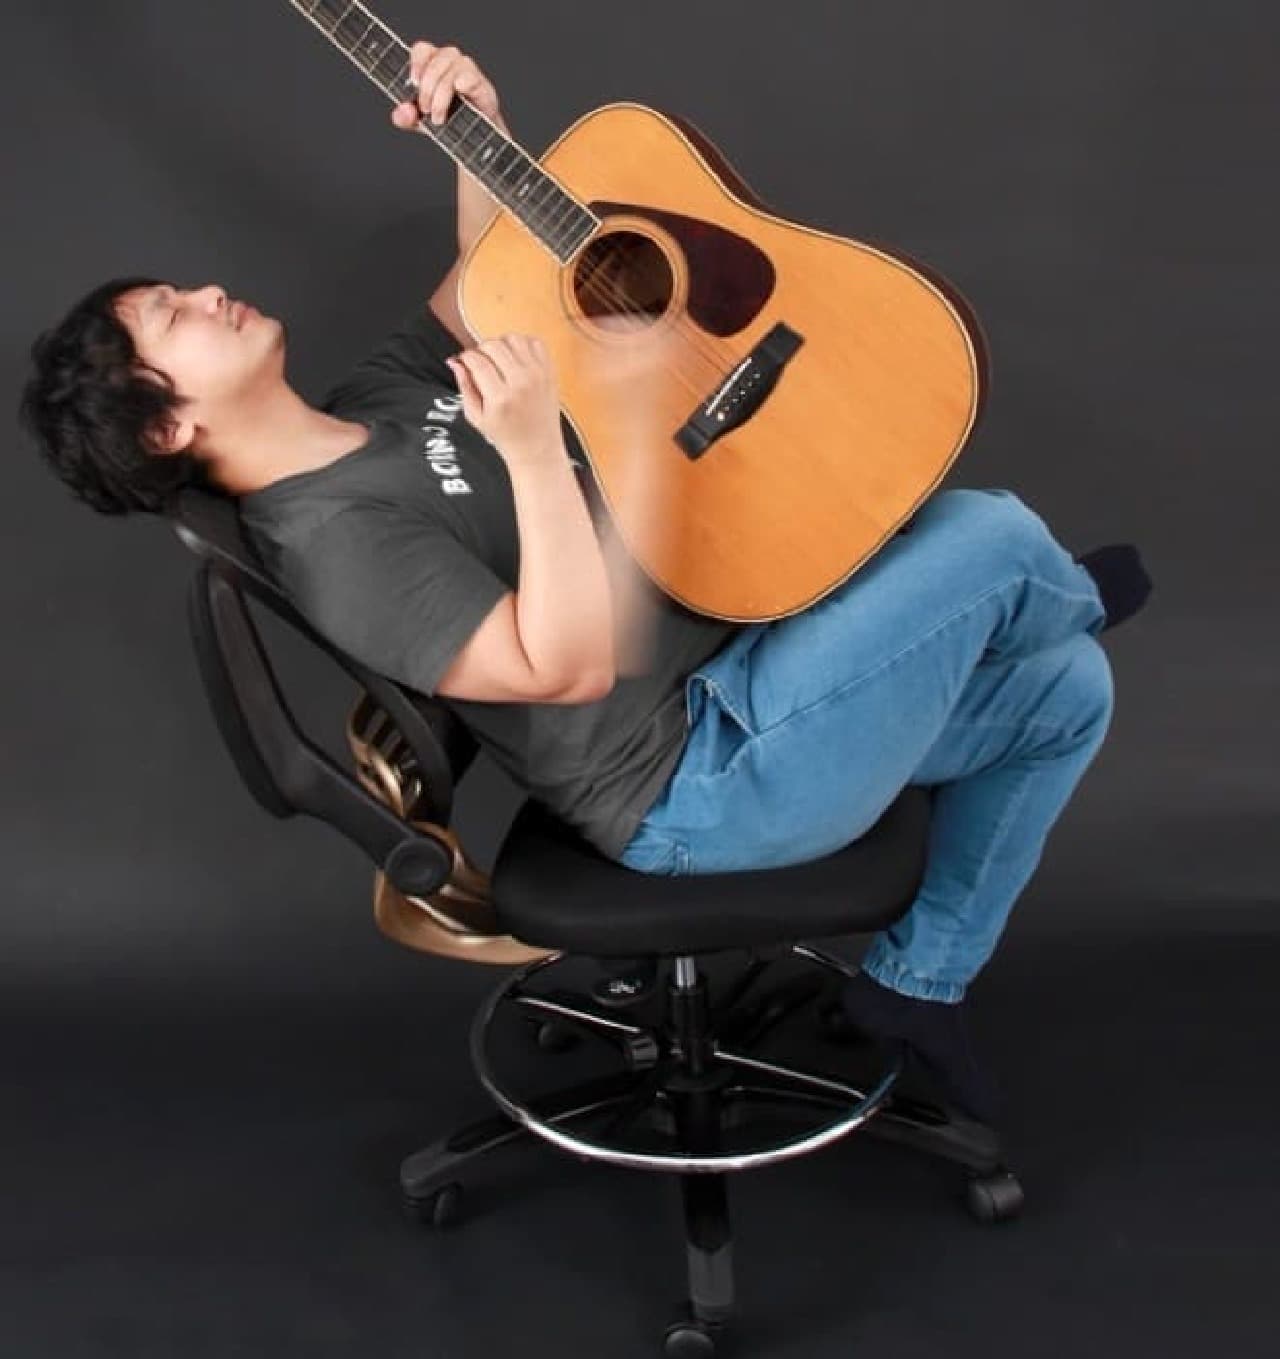 ギタリストのための椅子「ギタイスPRO」